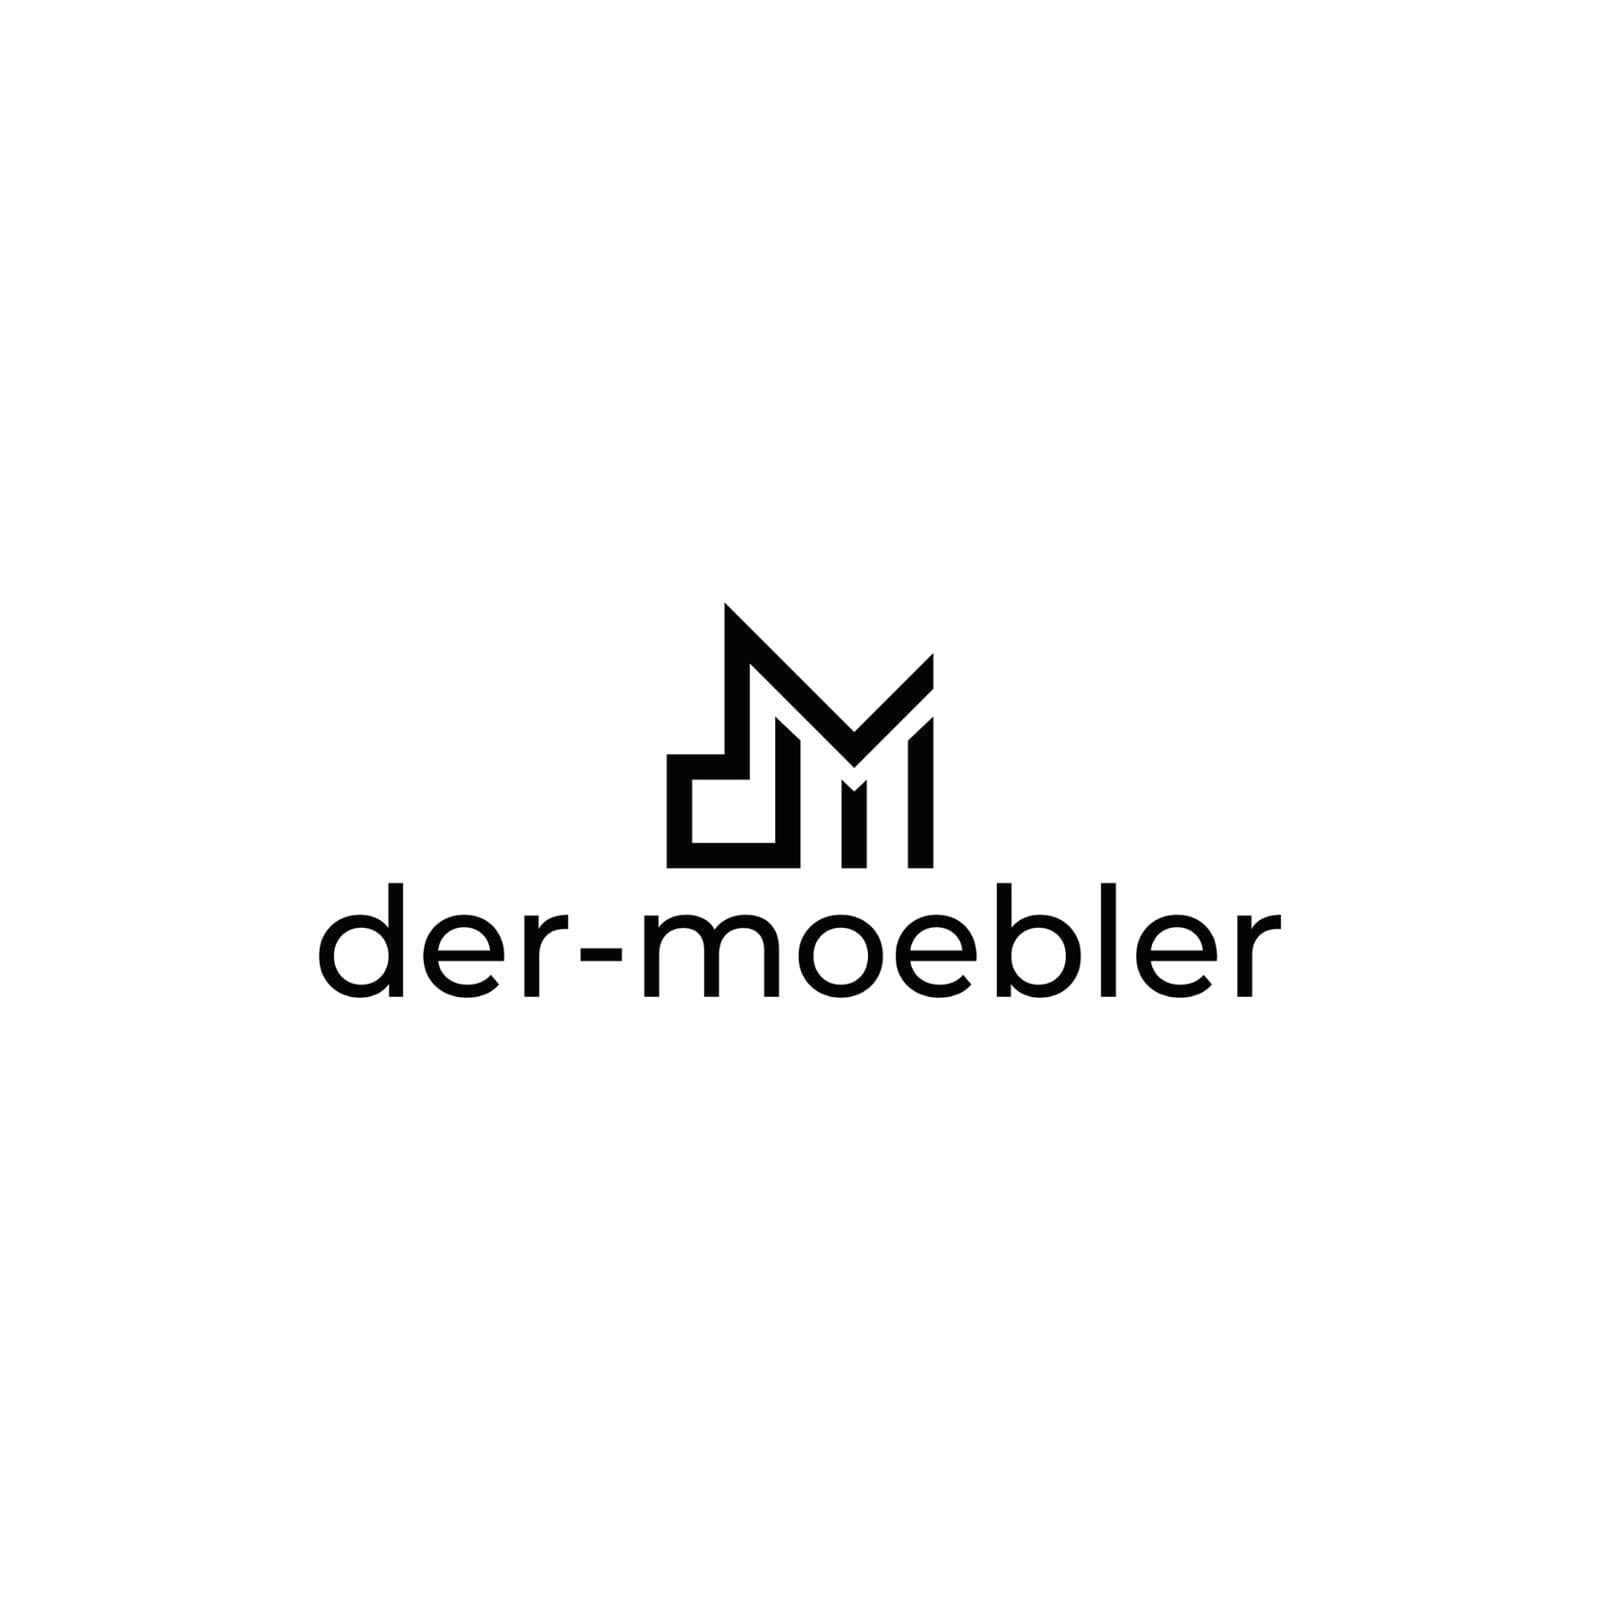 www.der-moebler.de